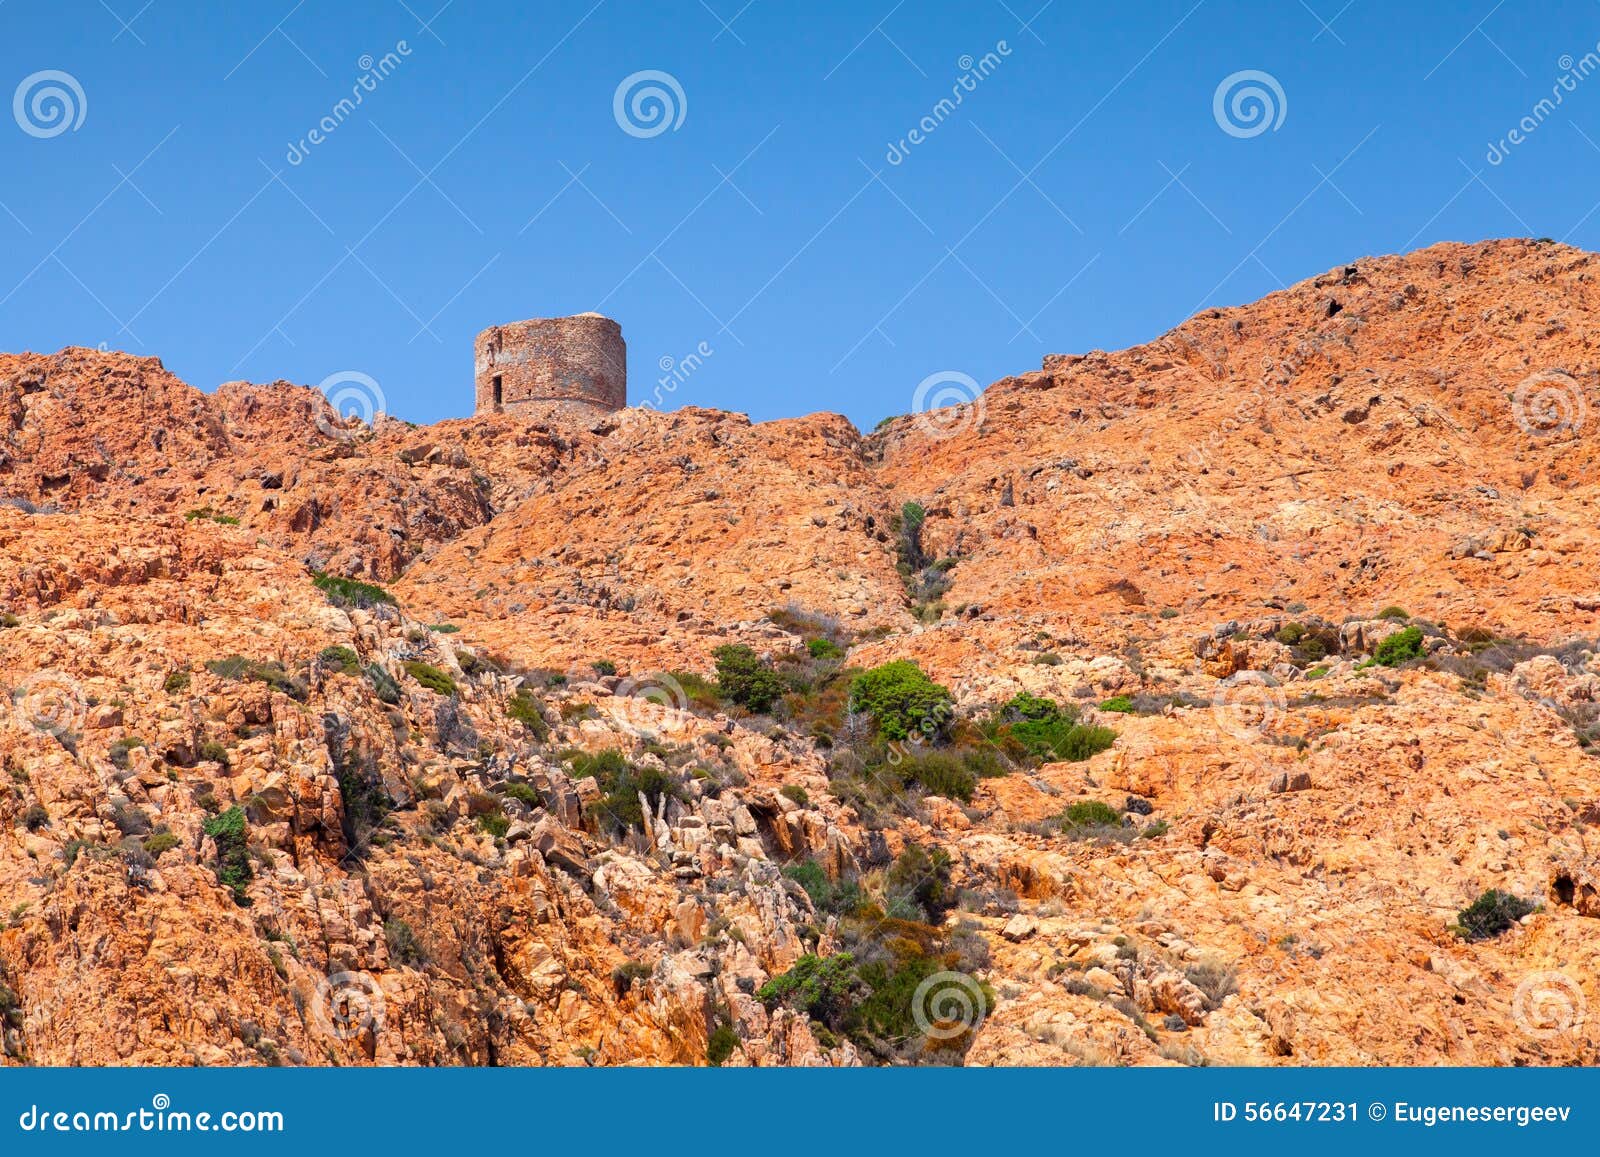 Oude Genoese-toren op Capo Rosso, Corsica. Oude Genoese-toren op de klip van Capo Rosso, Corsica, Frankrijk Pianagebied